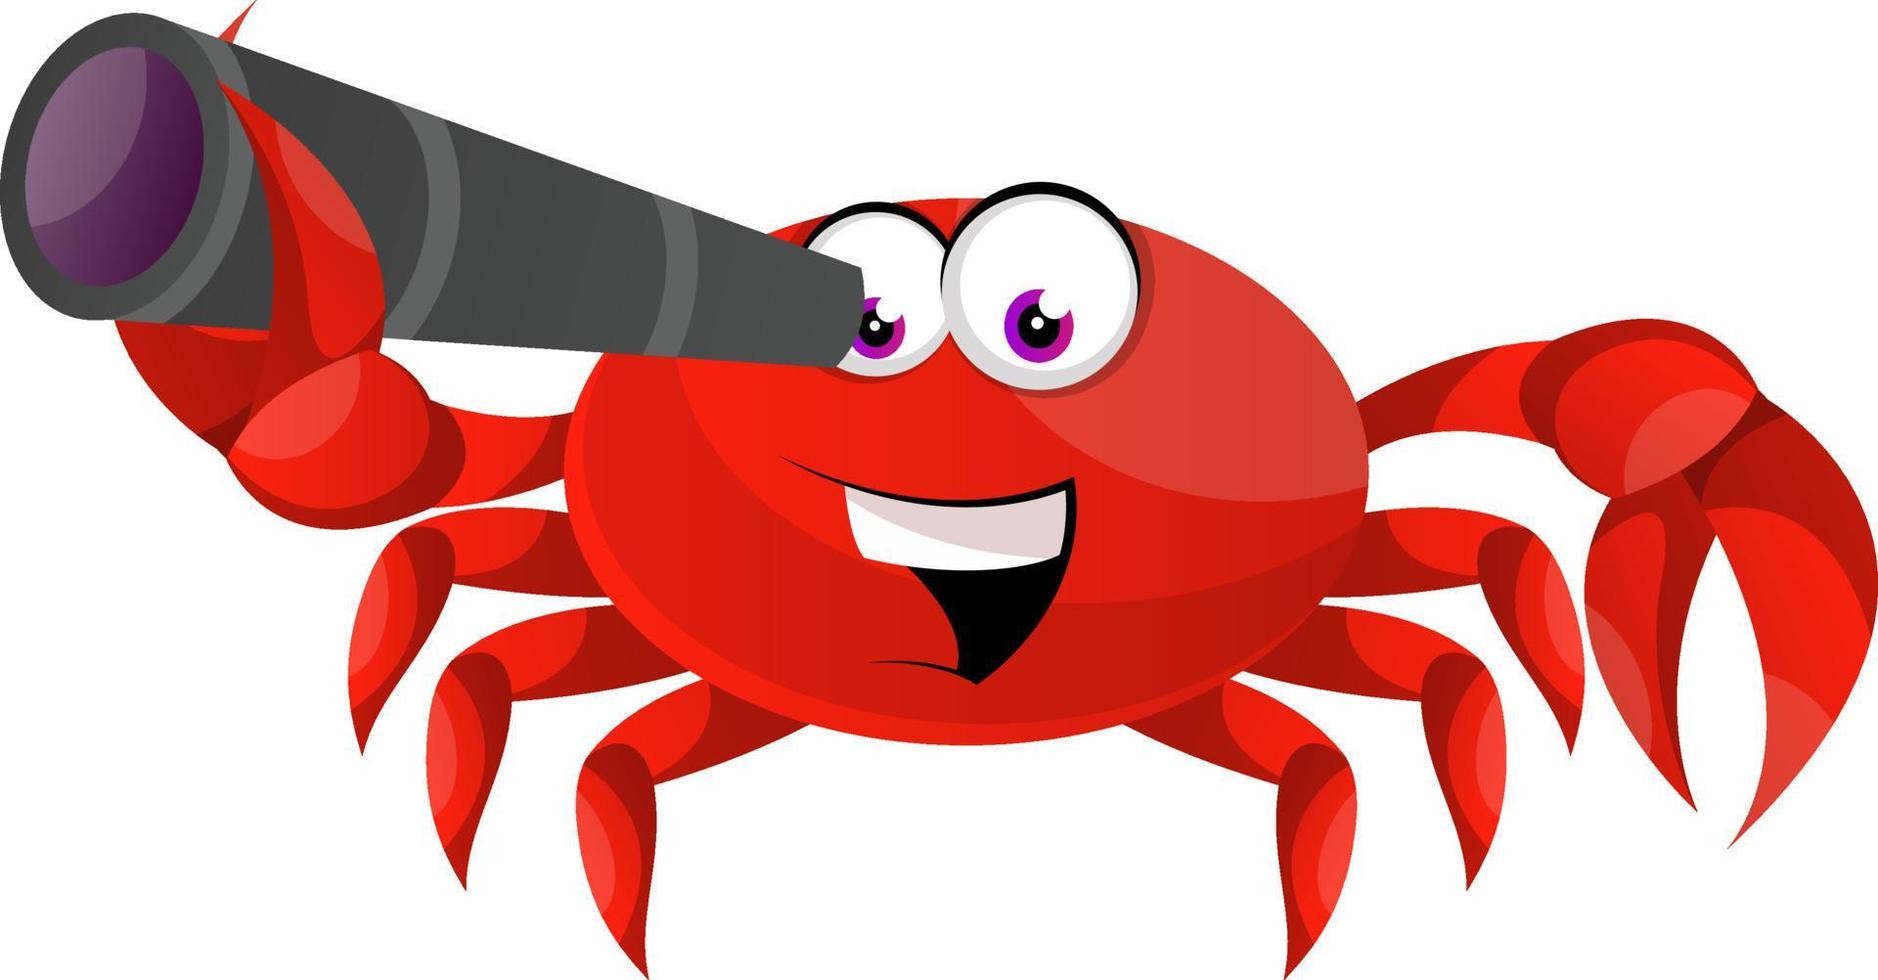 Crabe à la recherche avec télescope, illustration, vecteur sur fond blanc.